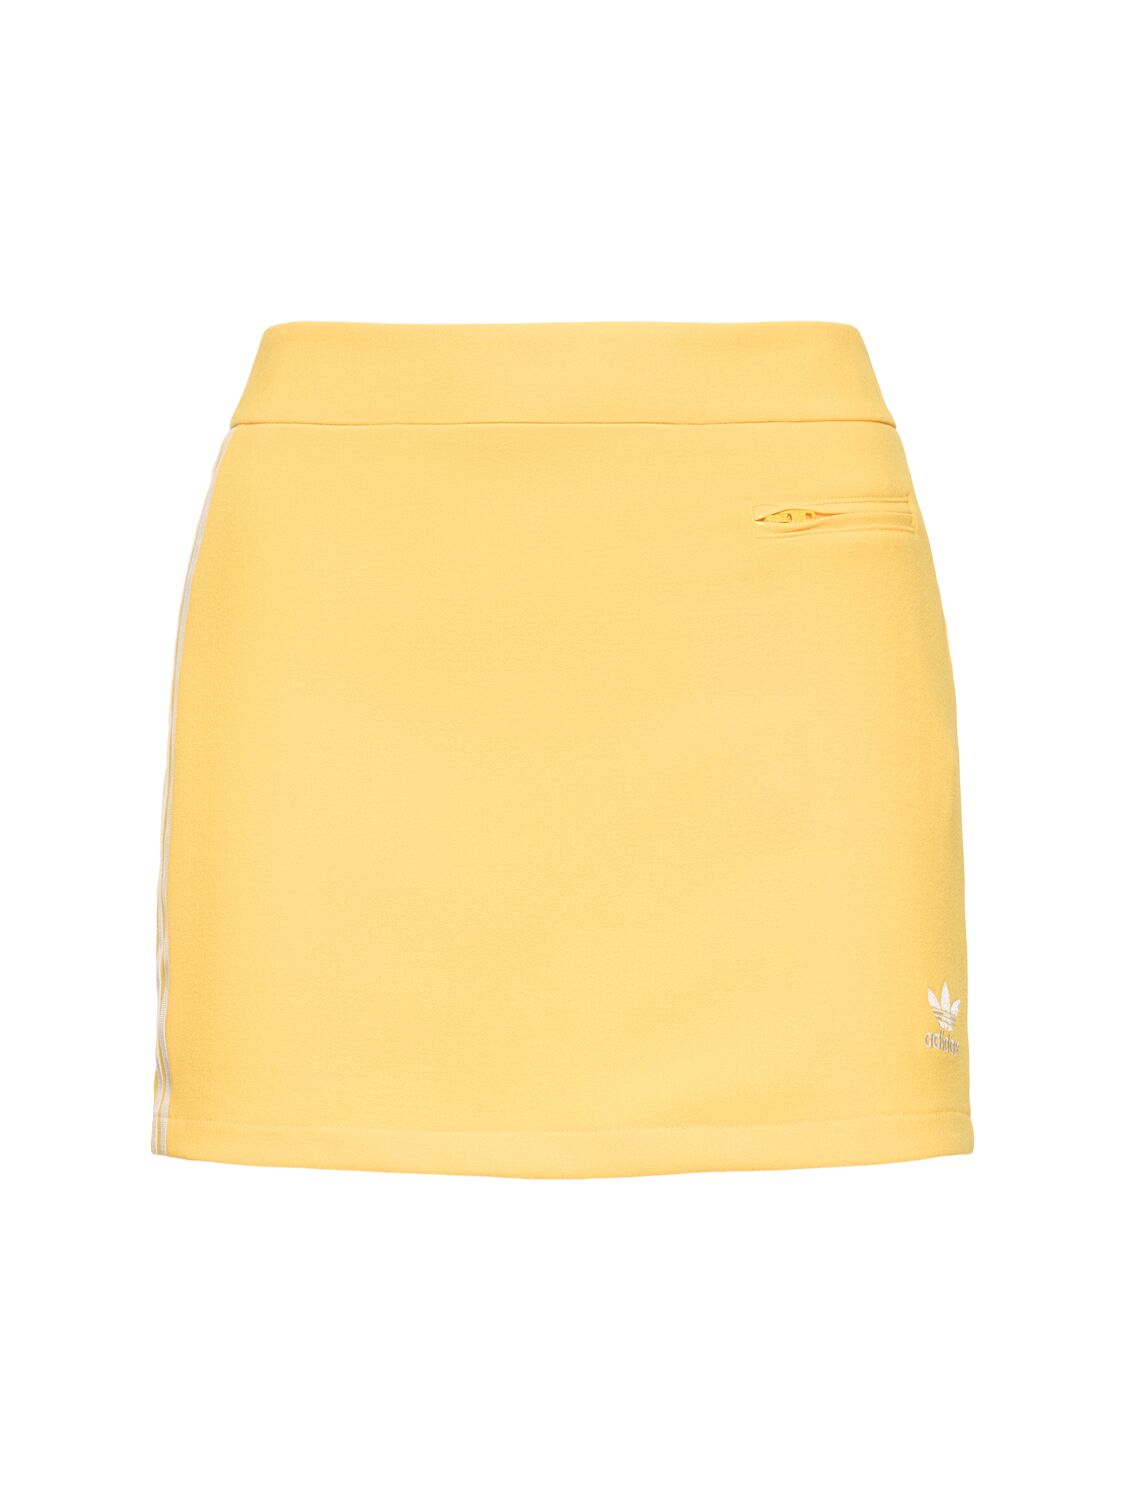 Image of Crepe Skirt